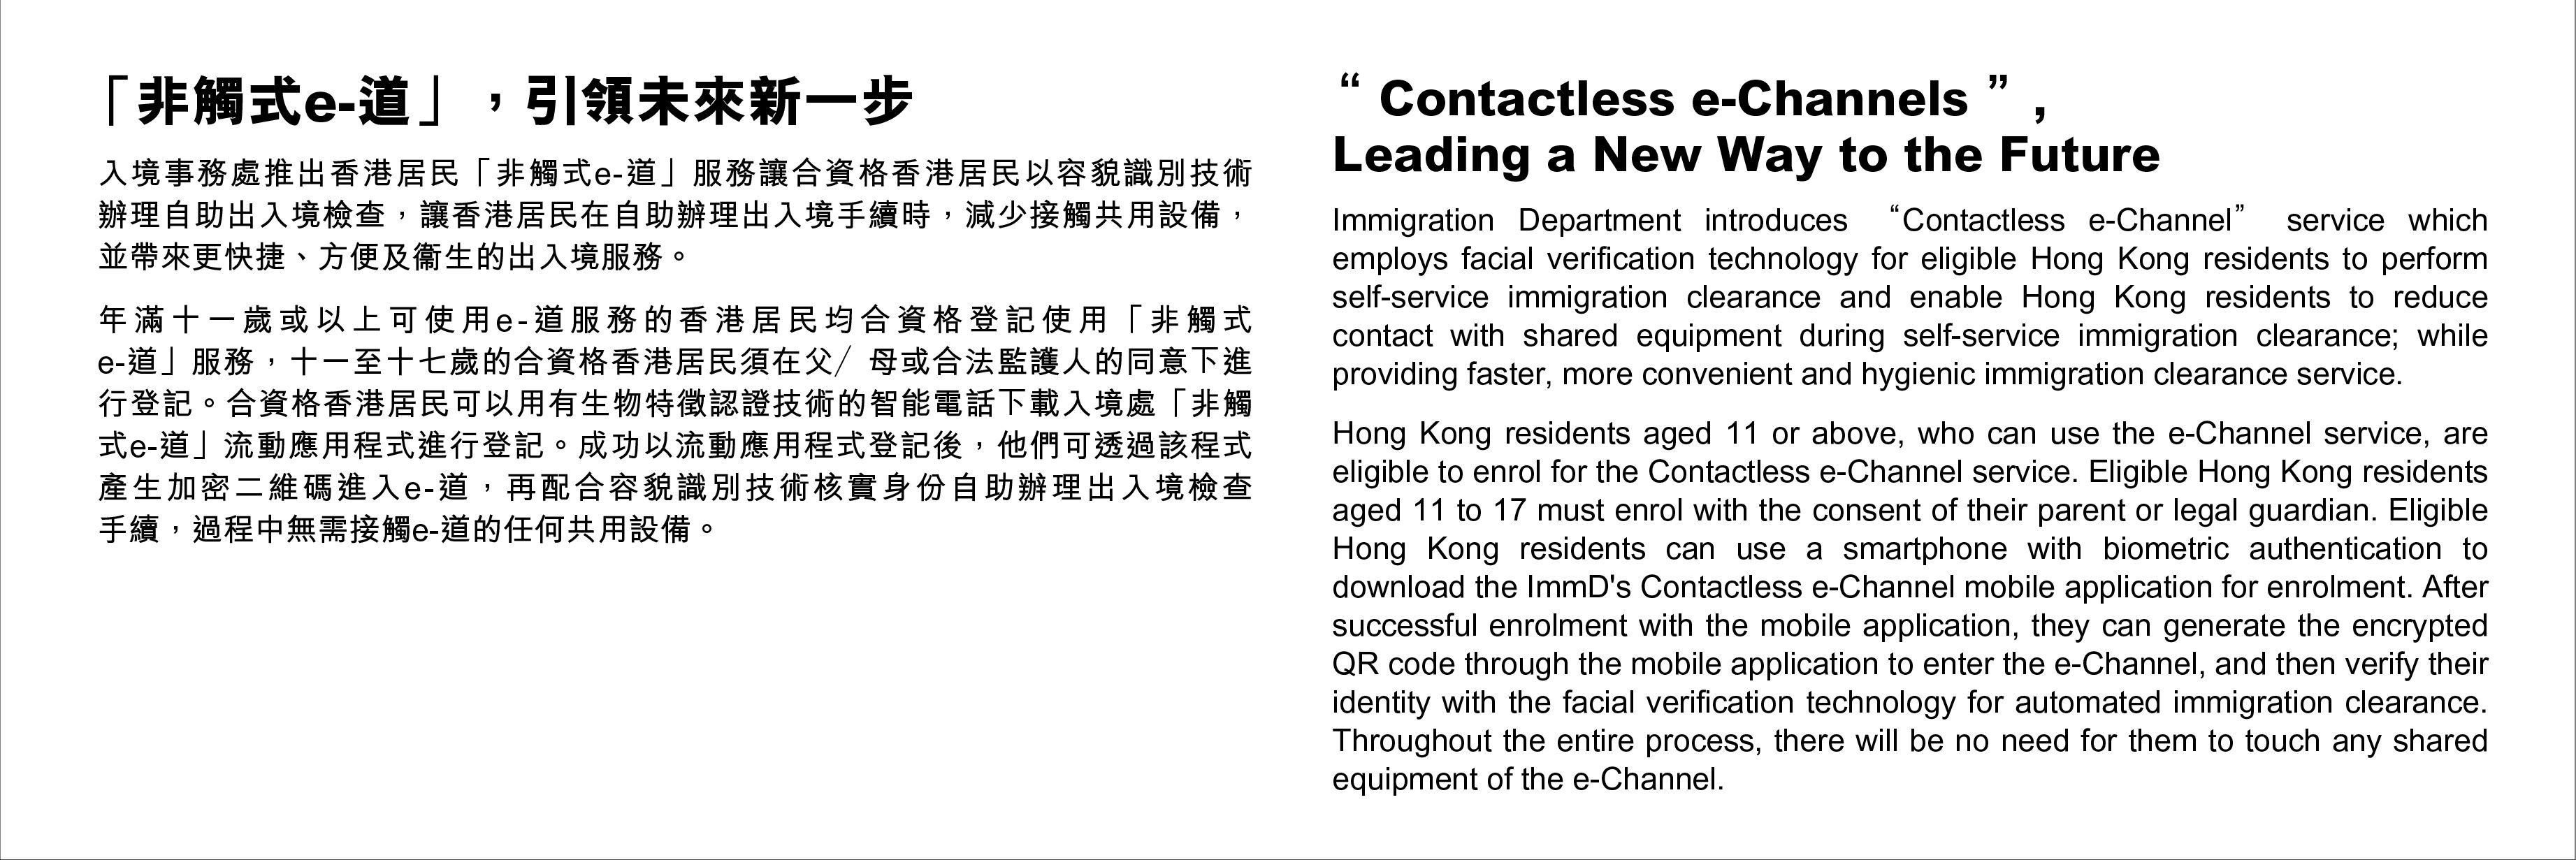 「非觸式e-道」，引領未來新一步 - 入境事務處推出香港居民「非觸式e-道」服務讓合資格香港居民以容貌識別技術辦理自助出入境檢查，讓香港居民在自助辦理出入境手續時，減少接觸共用設備，並帶來更快捷、方便及衞生的出入境服務。年滿十一歲或以上可使用e-道服務的香港居民均合資格登記使用「非觸式e-道」服務，十一至十七歲的合資格香港居民須在父／母或合法監護人的同意下進行登記。合資格香港居民可以用有生物特徵認證技術的智能電話下載入境處「非觸式e-道」流動應用程式進行登記。成功以流動應用程式登記後，他們可透過該程式產生加密二維碼進入e-道，再配合容貌識別技術核實身份自助辦理出入境檢查手續，過程中無需接觸e-道的任何共用設備。